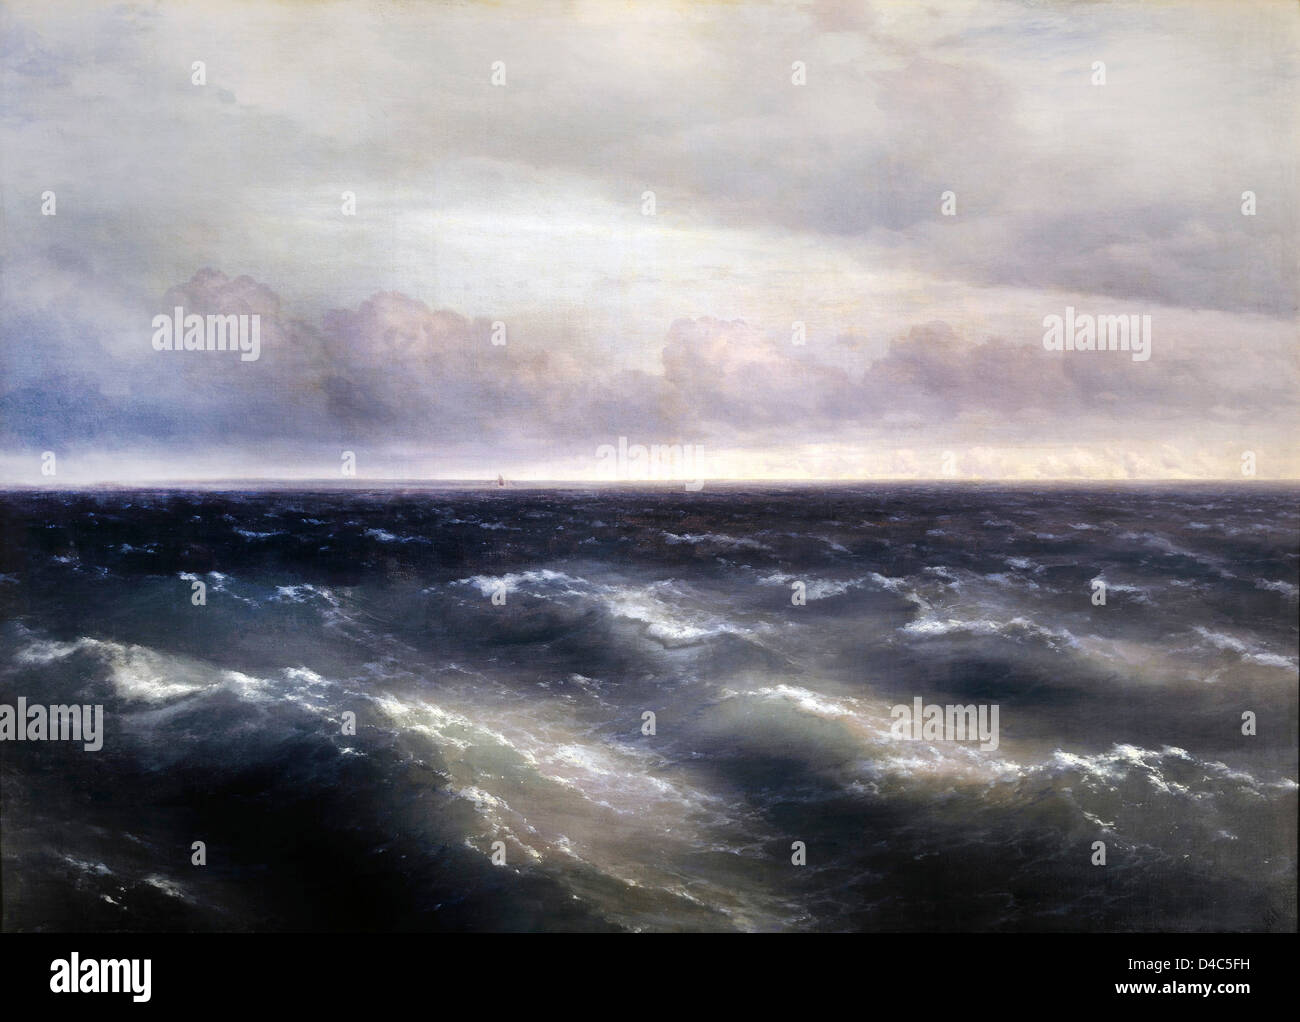 Ivan Aivazovsky, das Schwarze Meer. (Ein Sturm beginnt zu schüren im Schwarzen Meer) 1881 Öl auf Leinwand. Tretjakow-Galerie, Moskau Stockfoto